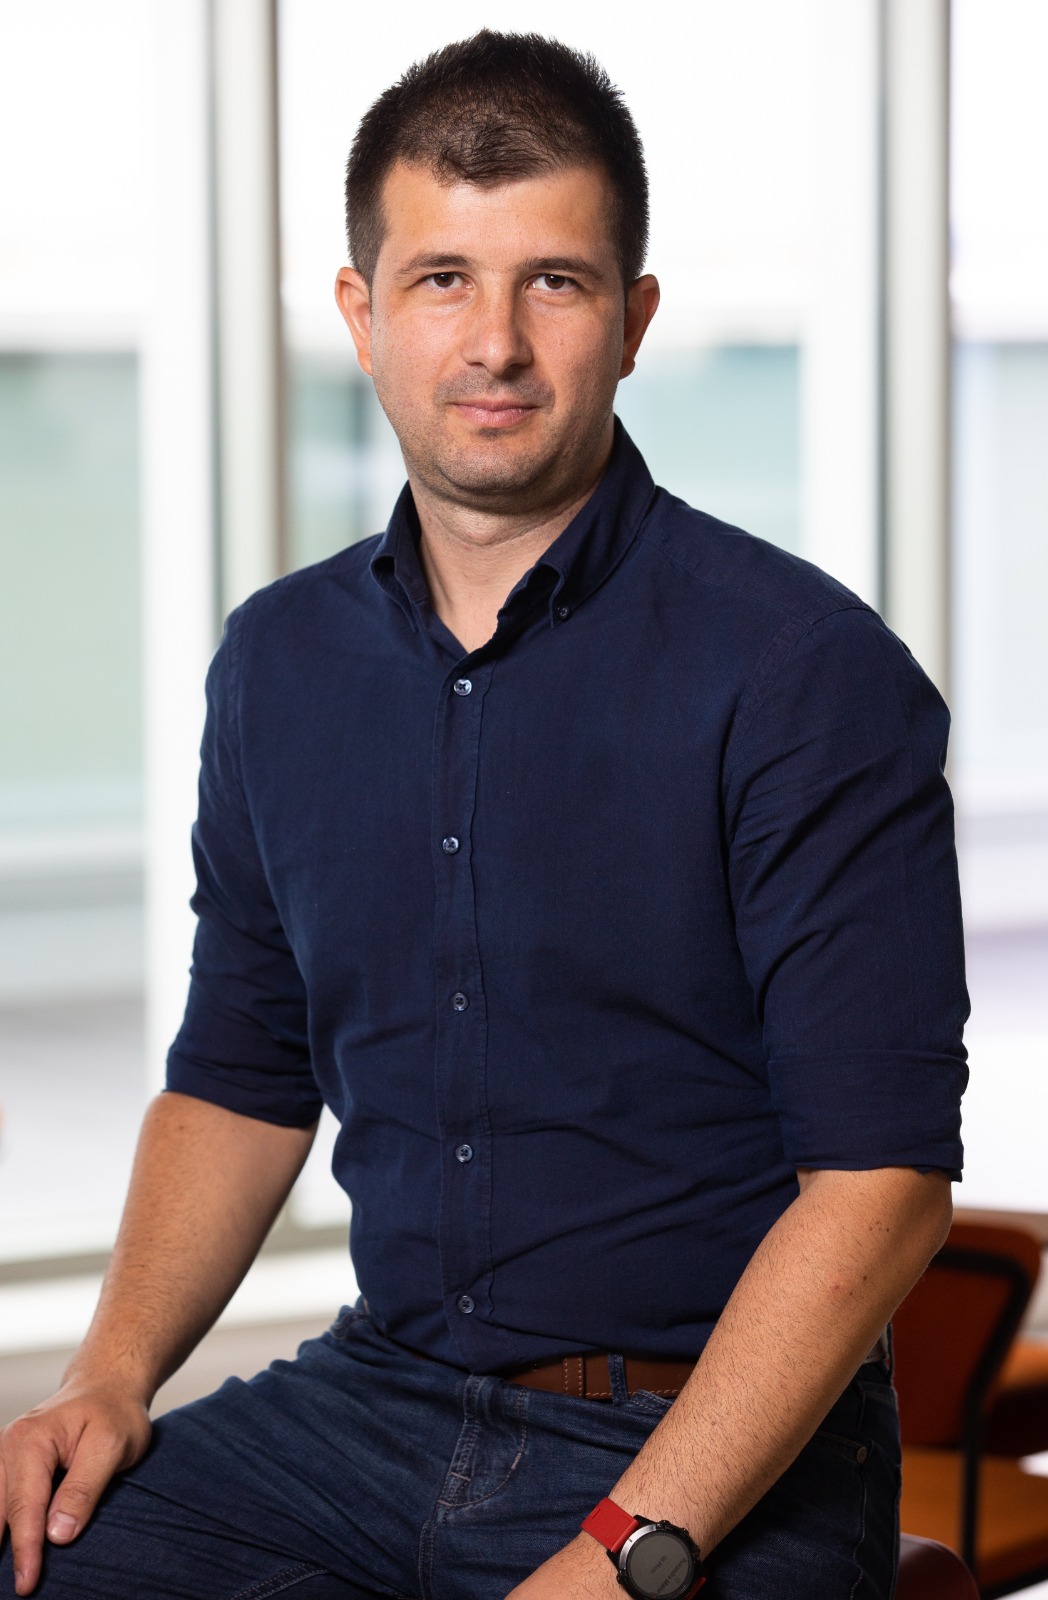 Ionuț Gherle se alătură WE AS WEB ca Partener și Chief Growth Officer